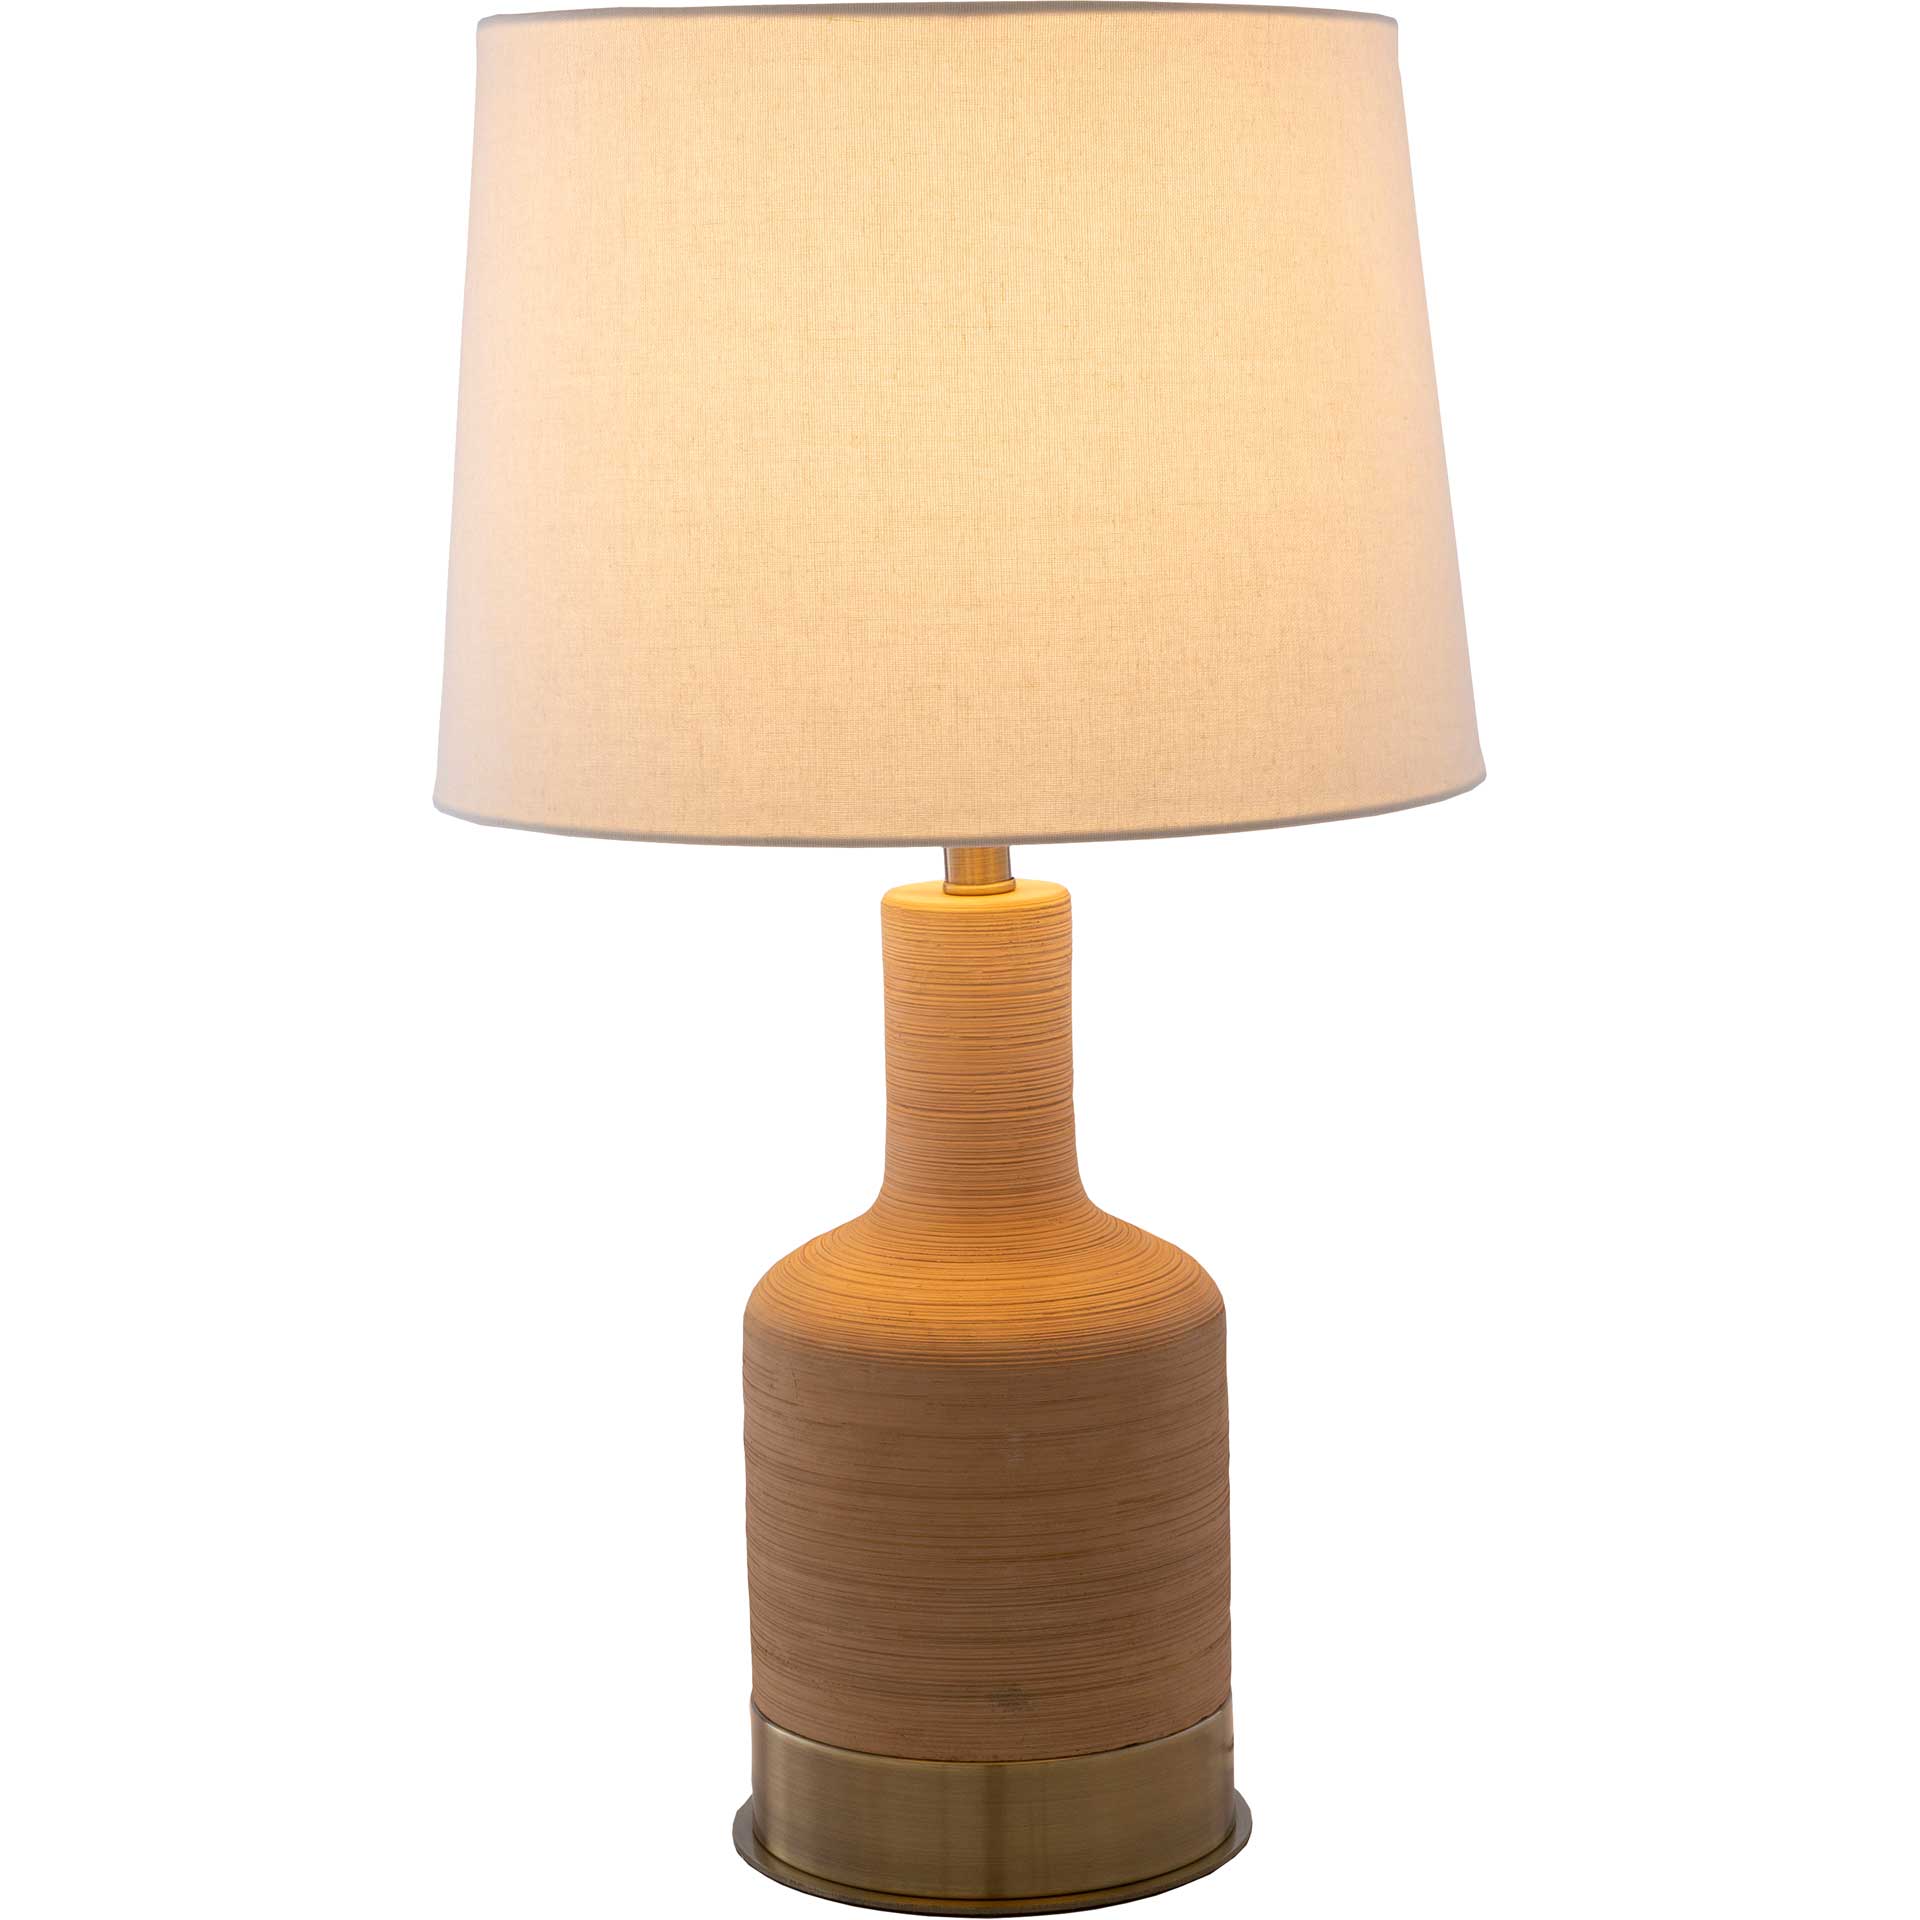 Braden Table Lamp Beige/Ivory/White